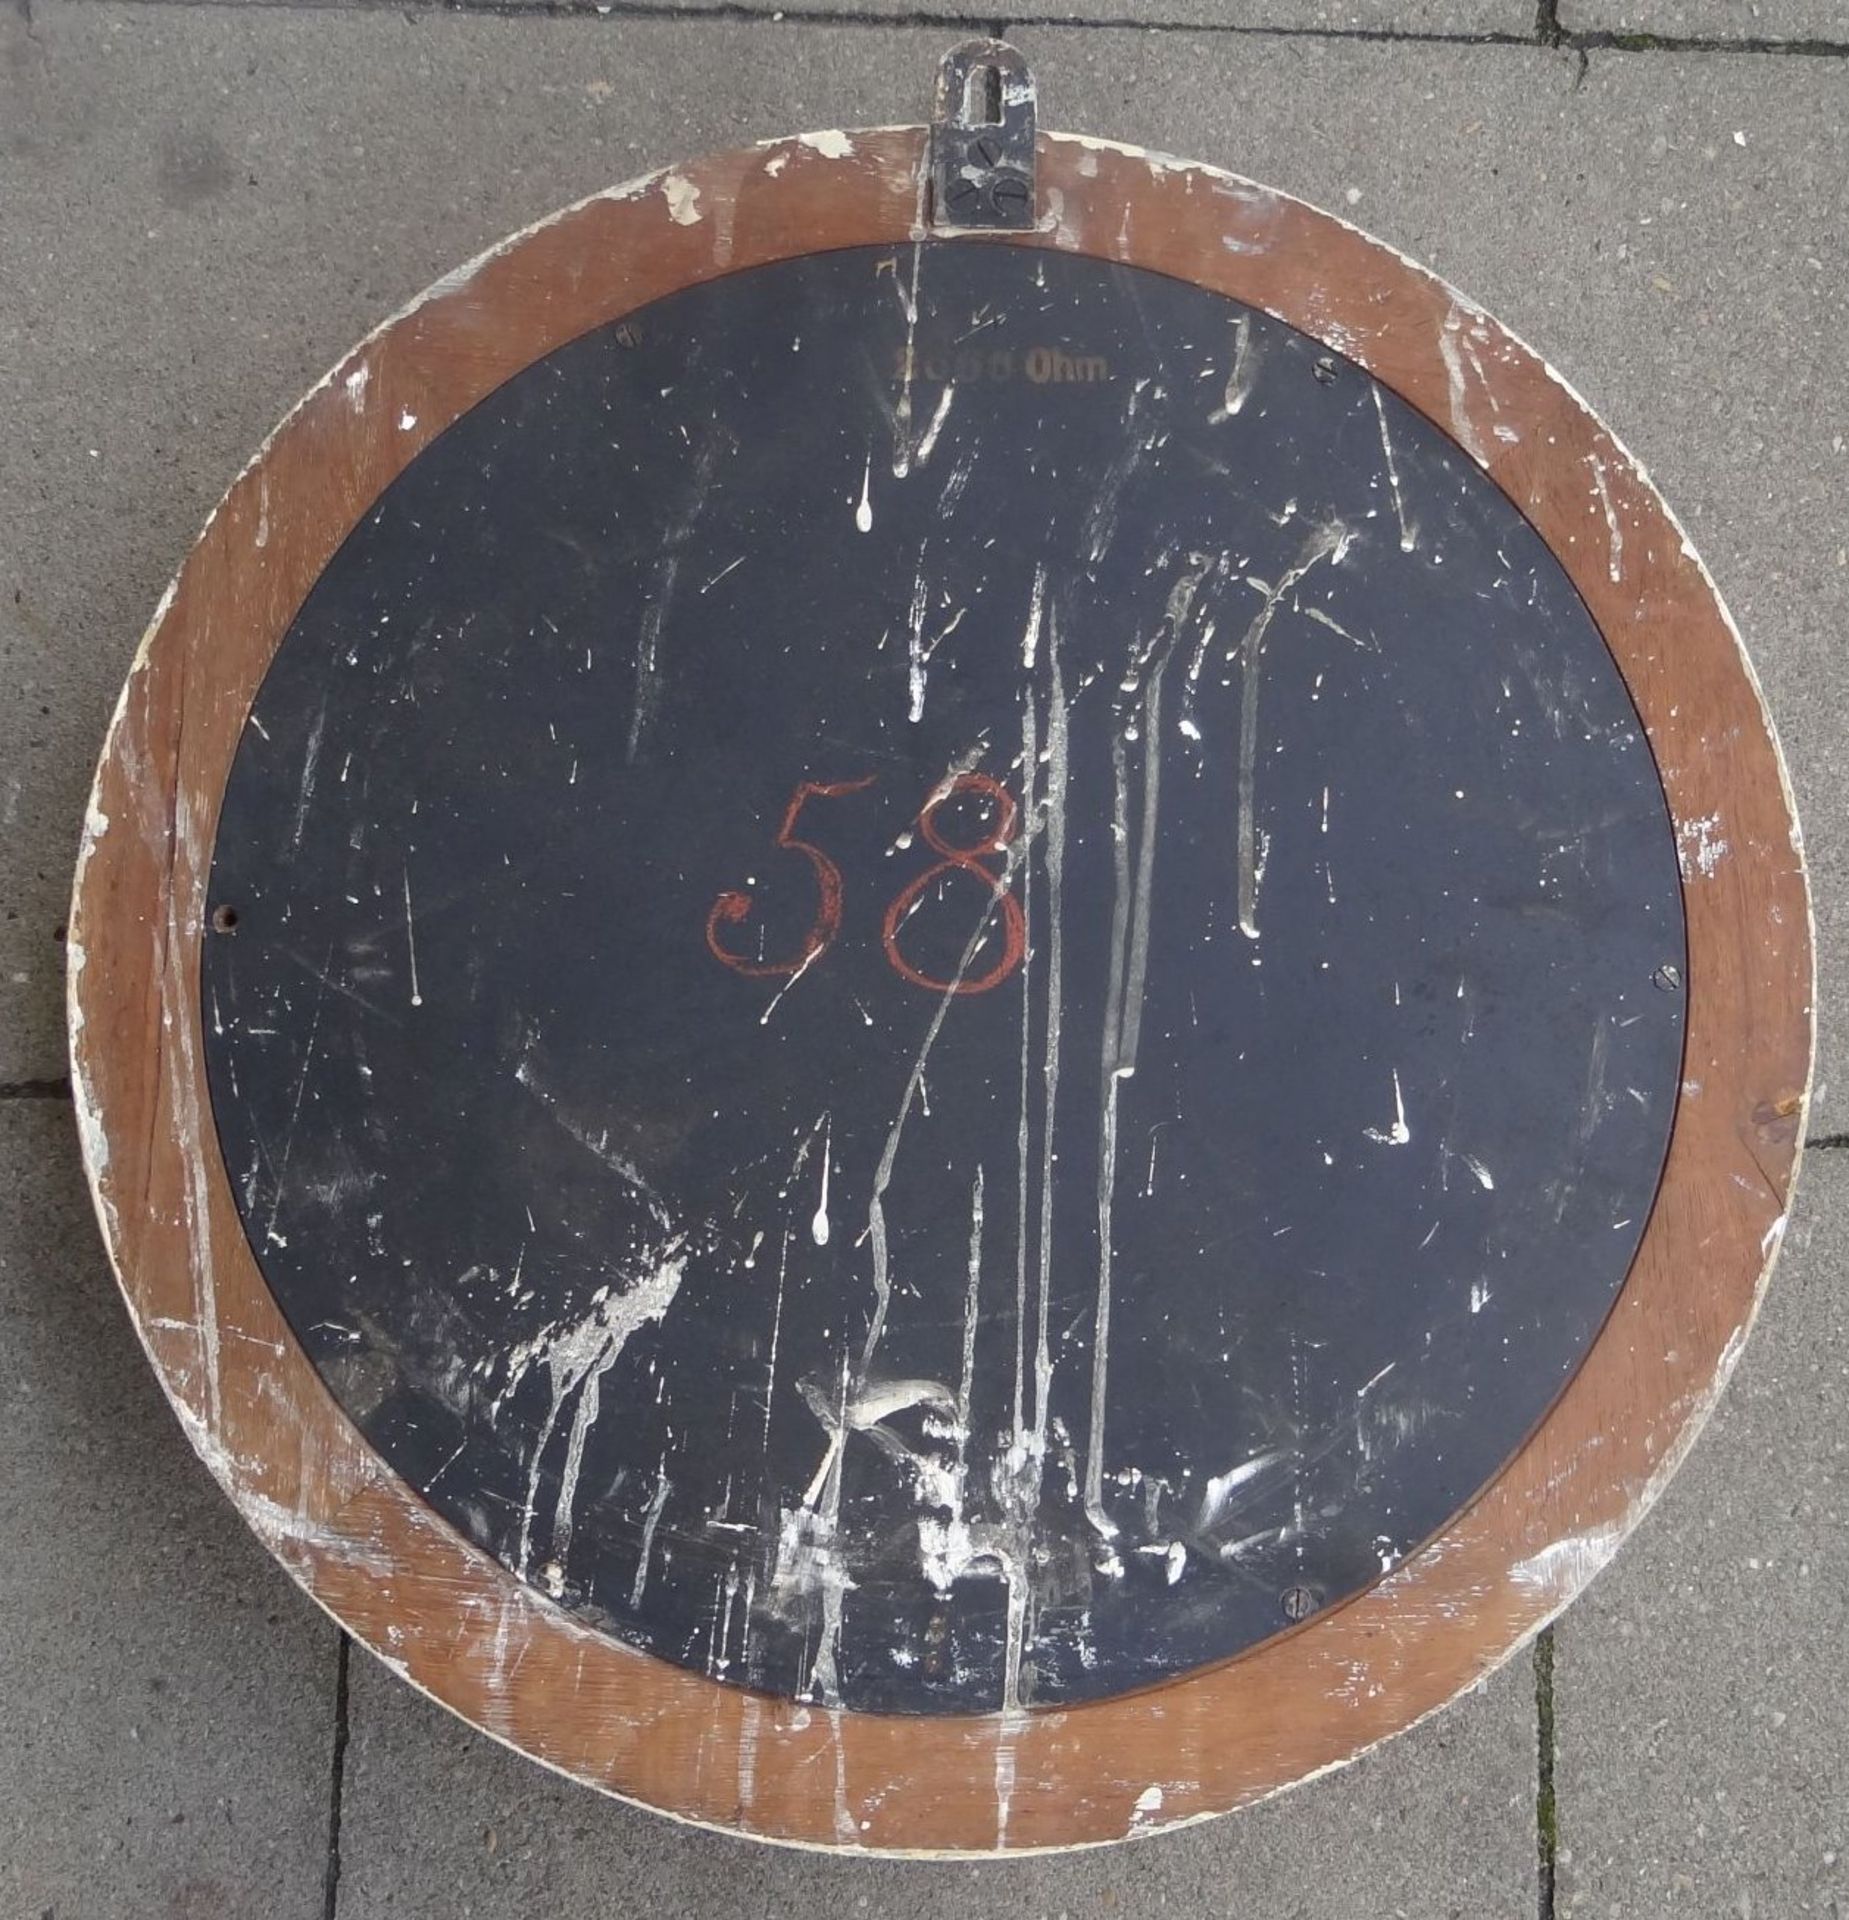 gr. runde elektrische Wanduhr,helles Holzgehäuse, weisses Ziffernblatt, D-48 cm, Funktion nicht - Bild 6 aus 7